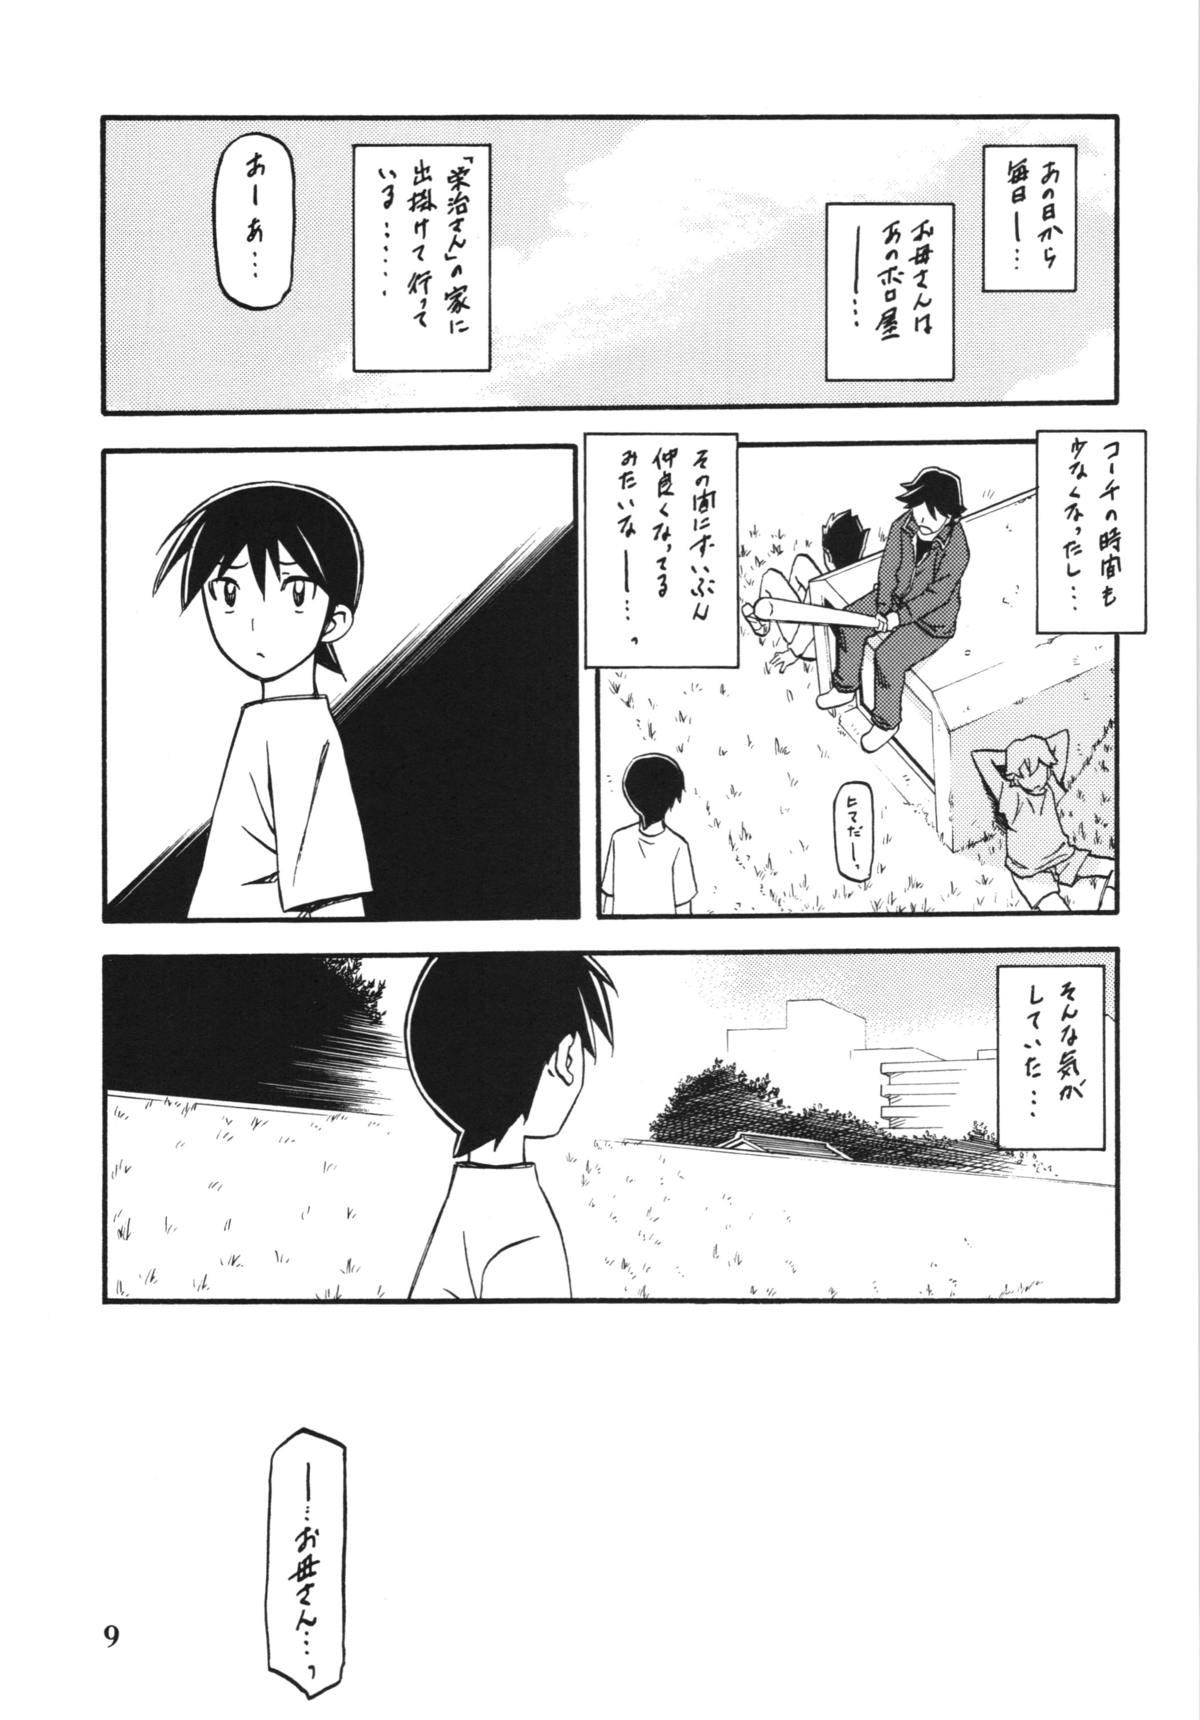 Bizarre Akebi no Mi - Yuuko Gemendo - Page 9